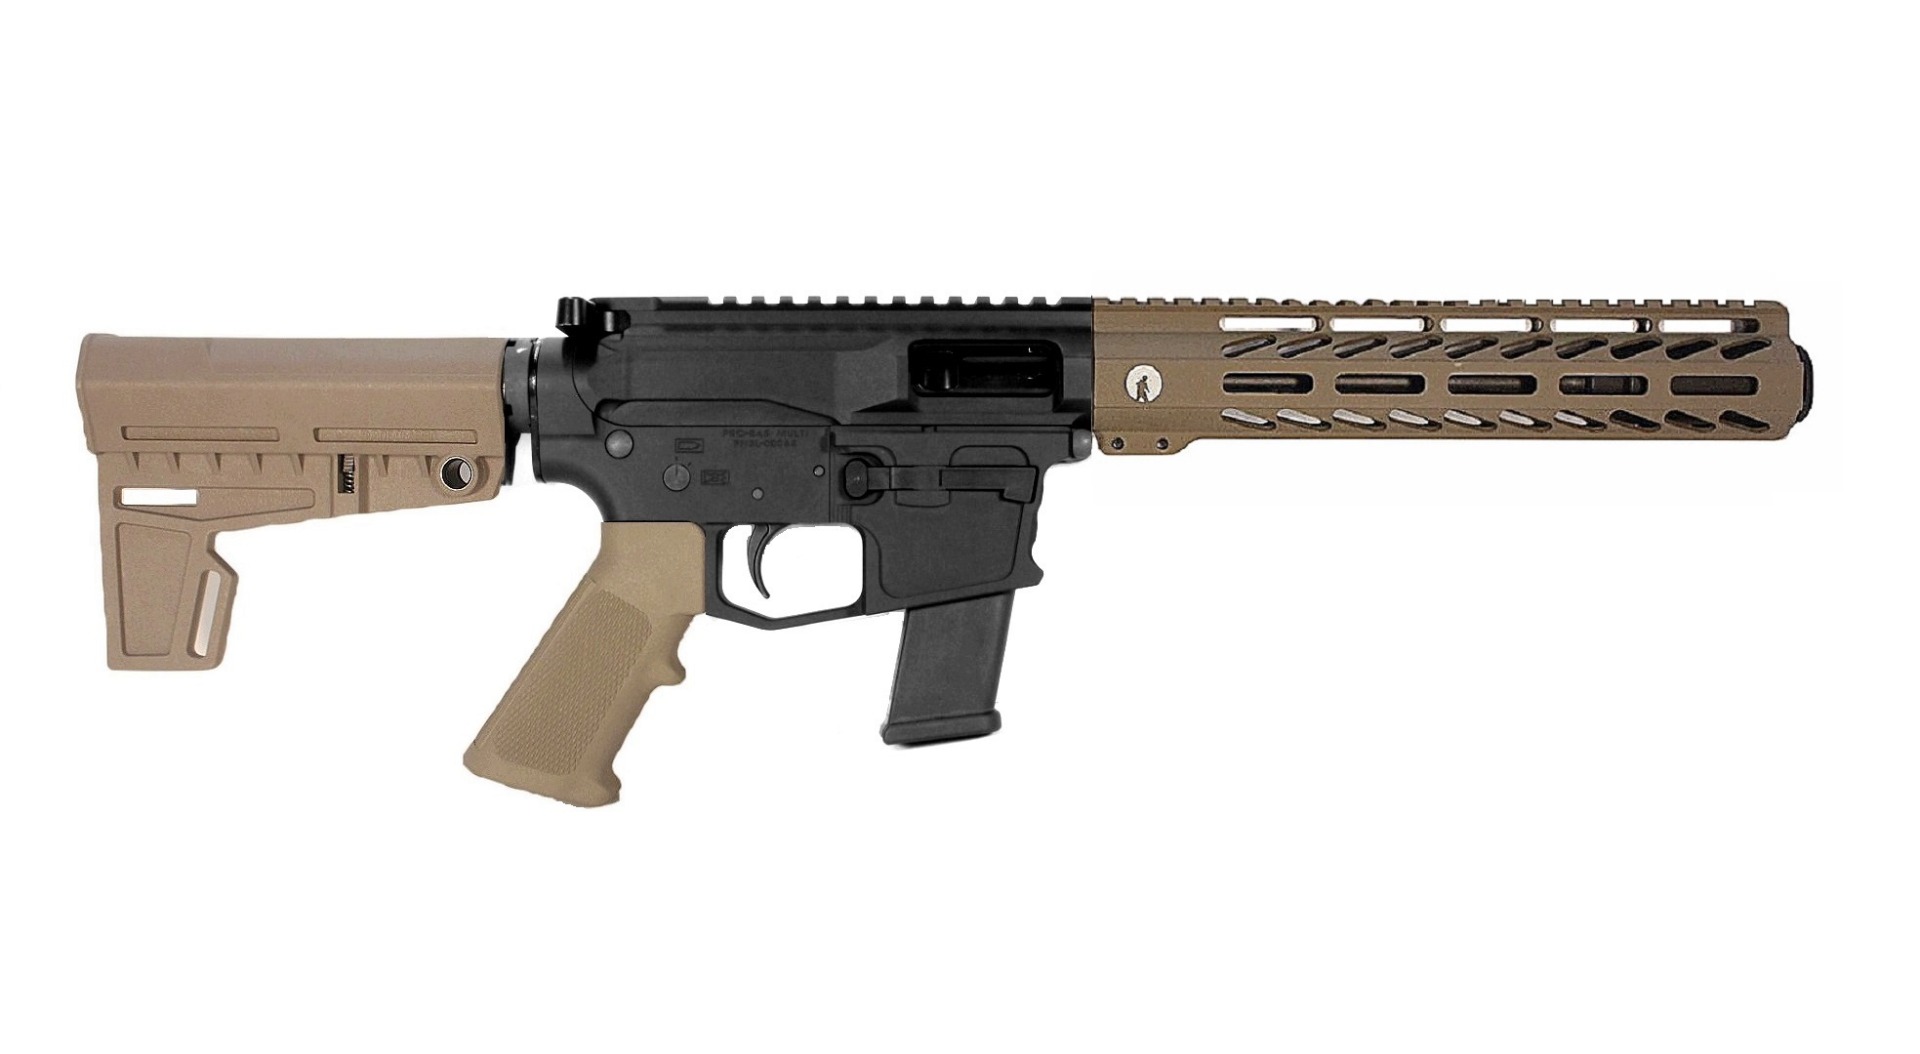 8.5 inch 40 S&W AR-15 Pistol in BLK/FDE